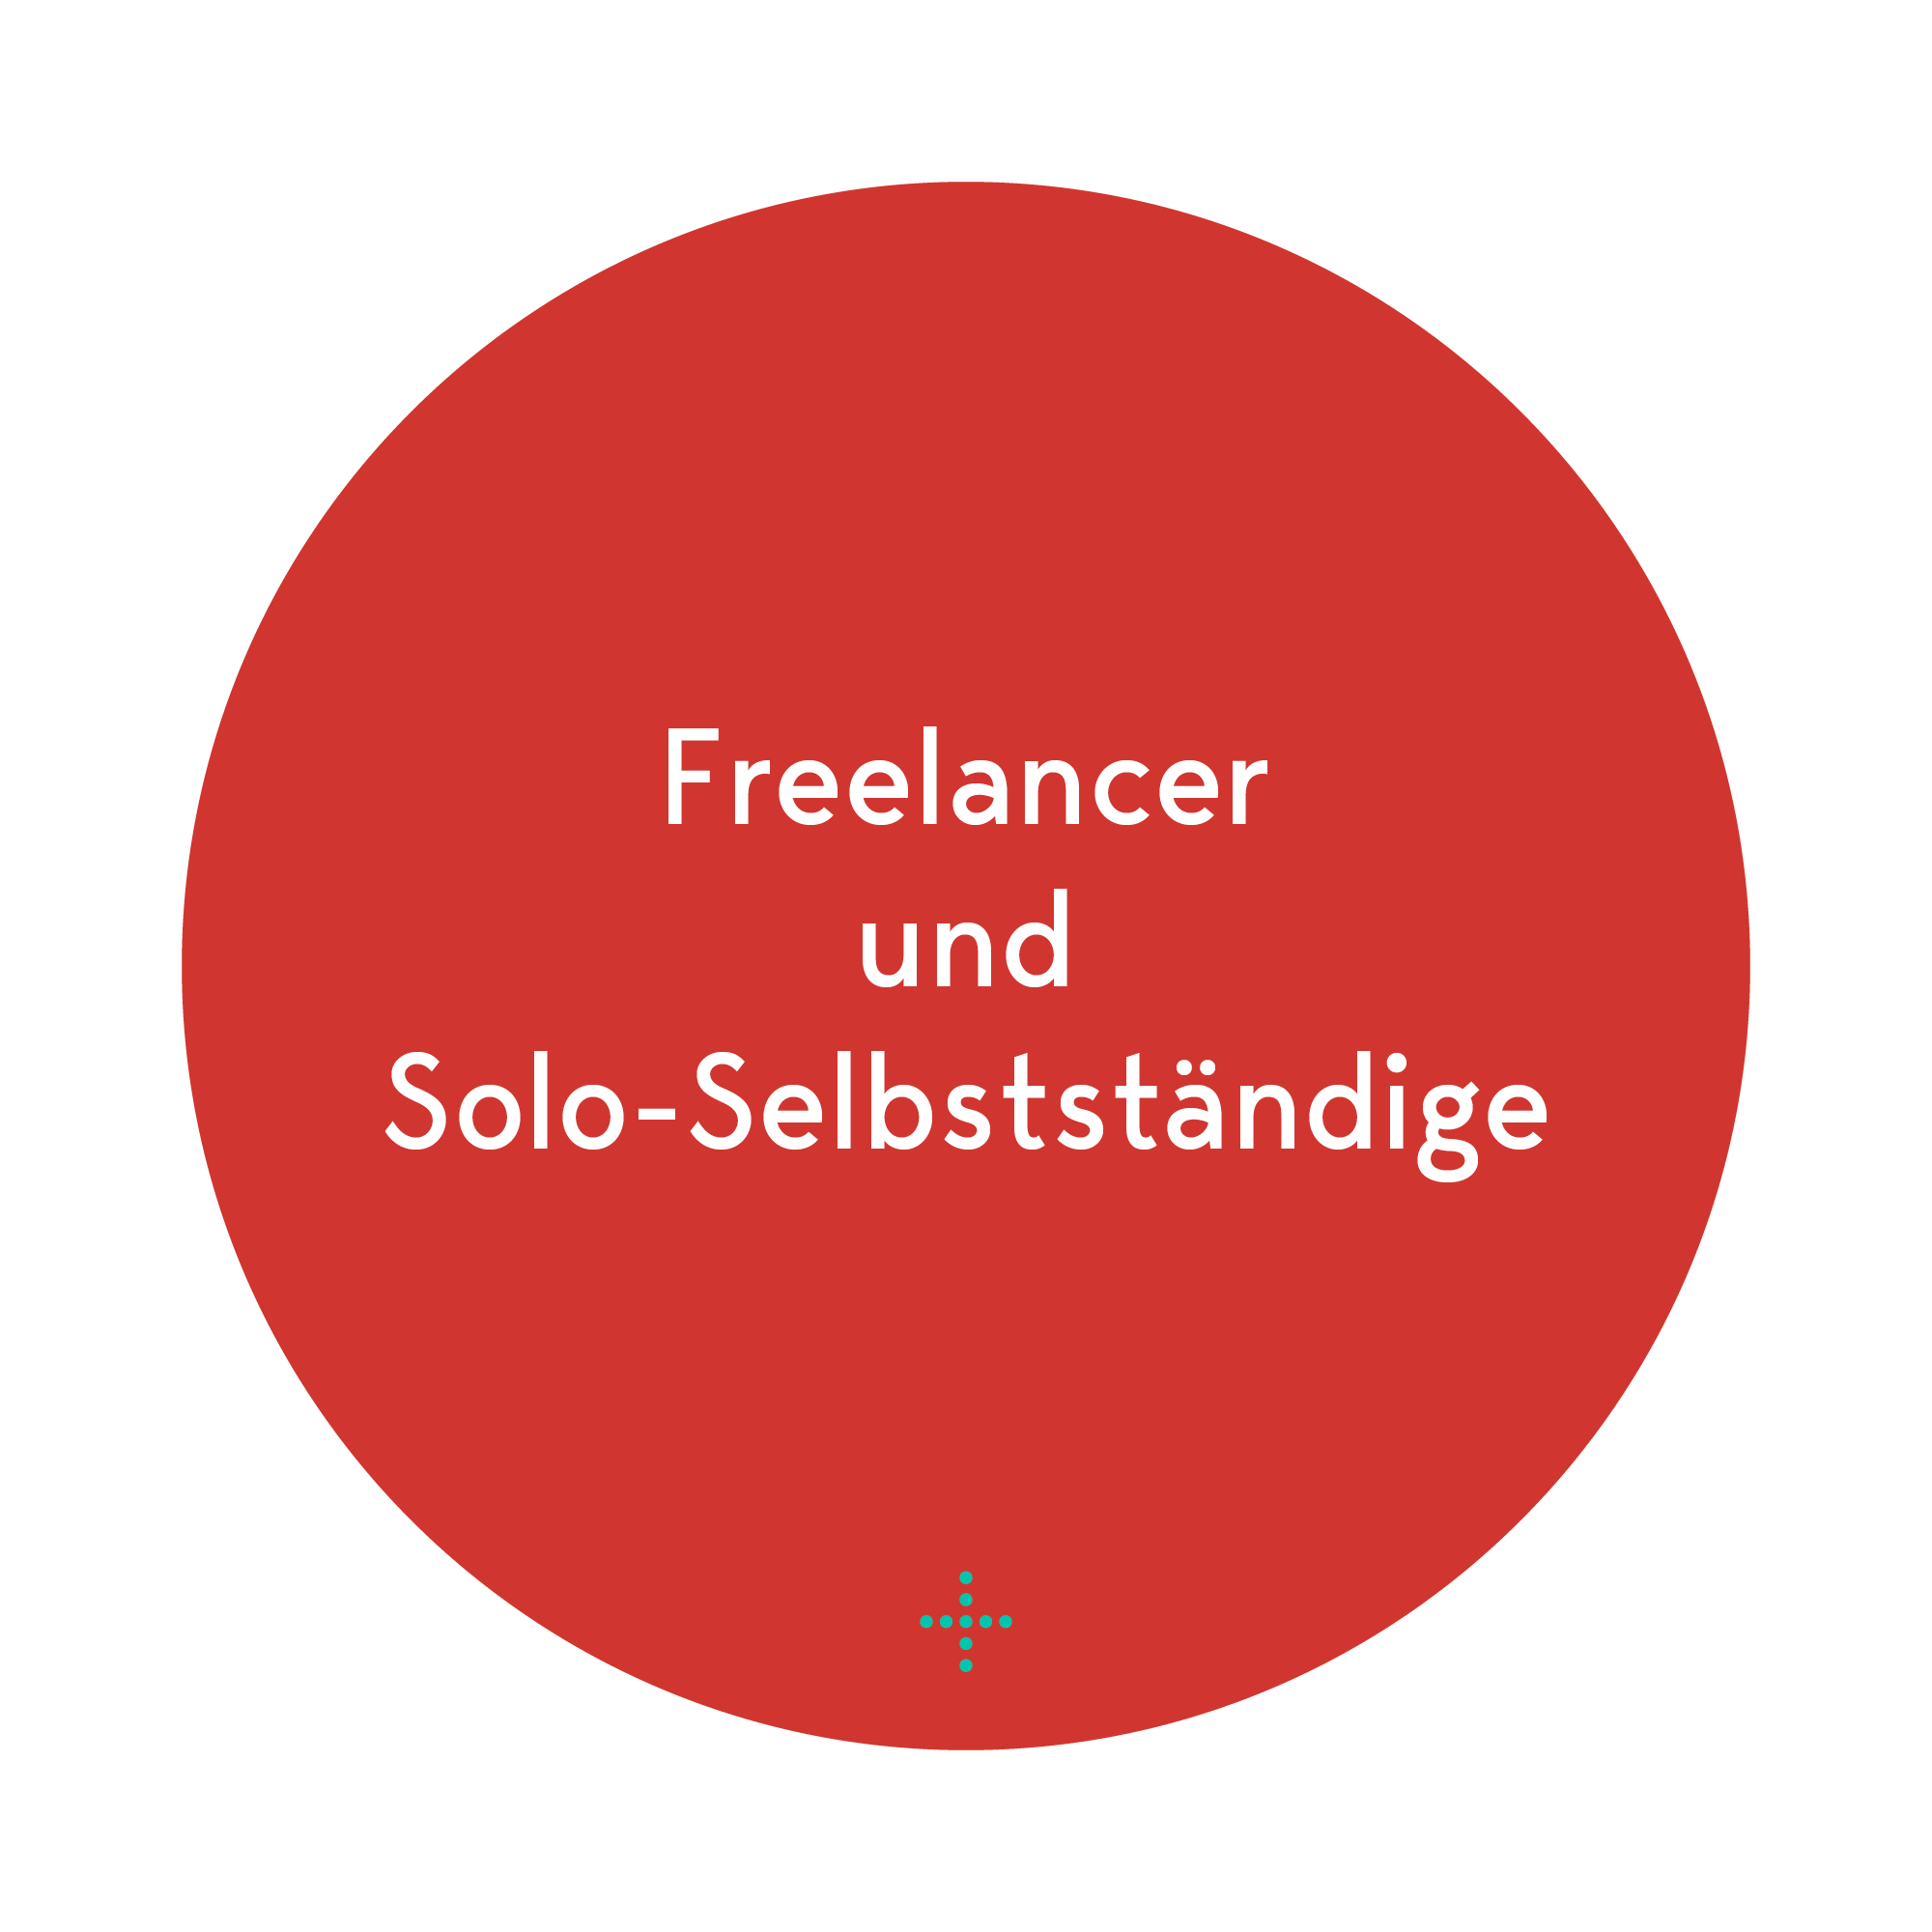 Freelancer und Solo-Selbstständige